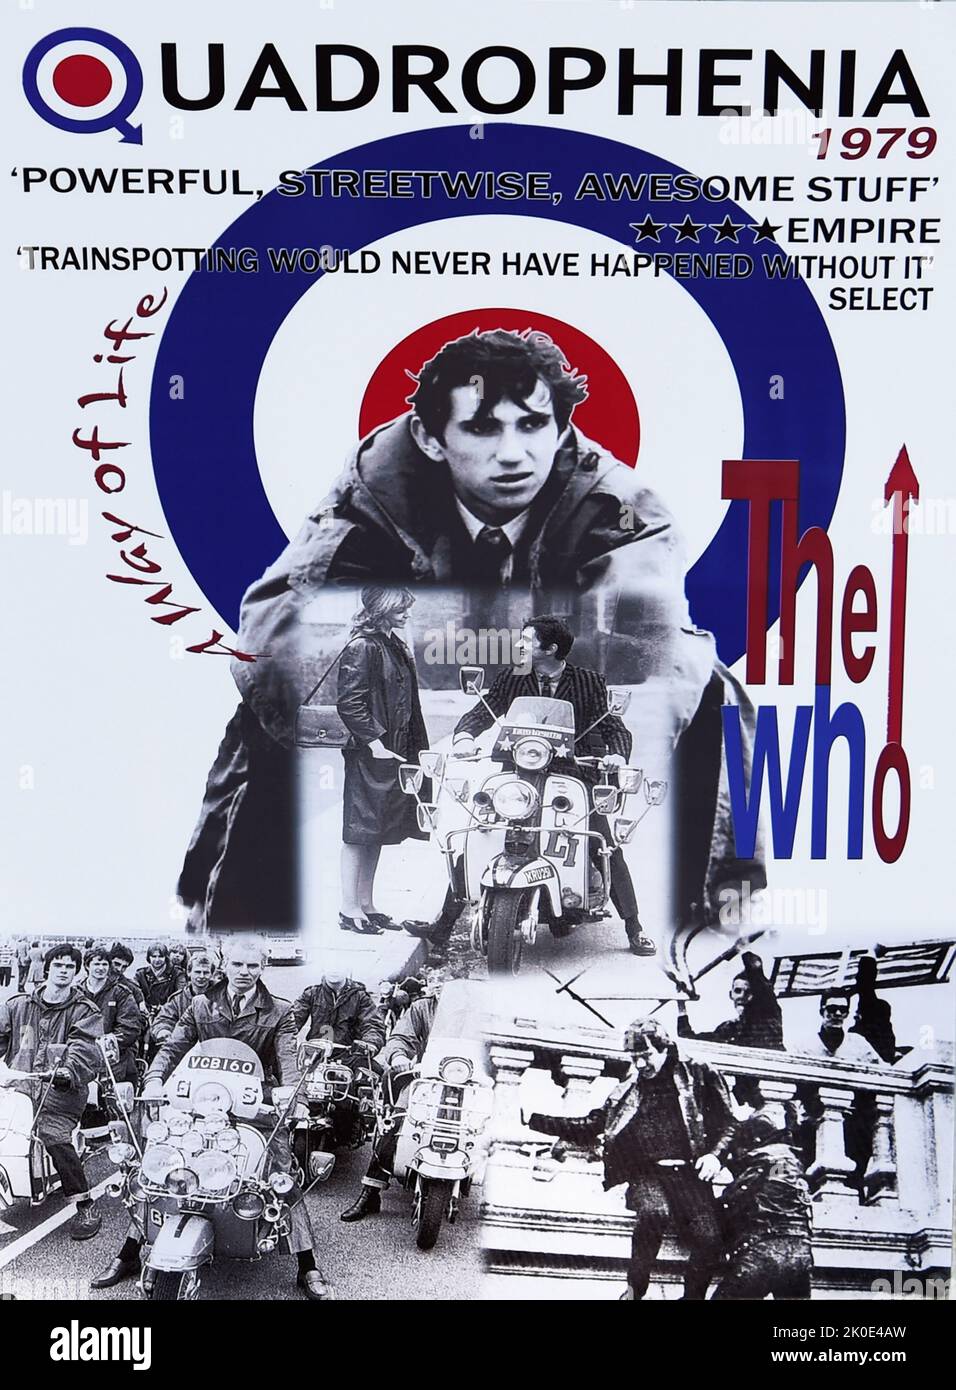 Quadrophenia ist das sechste Studioalbum der englischen Rockband The Who, das am 26. Oktober 1973 von Track Records als Doppelalbum veröffentlicht wurde. Es ist die zweite Rockoper der Gruppe. Die Geschichte, die 1965 in London und Brighton spielt, folgt einem jungen Mod namens Jimmy und seiner Suche nach Selbstwert und Bedeutung. Stockfoto